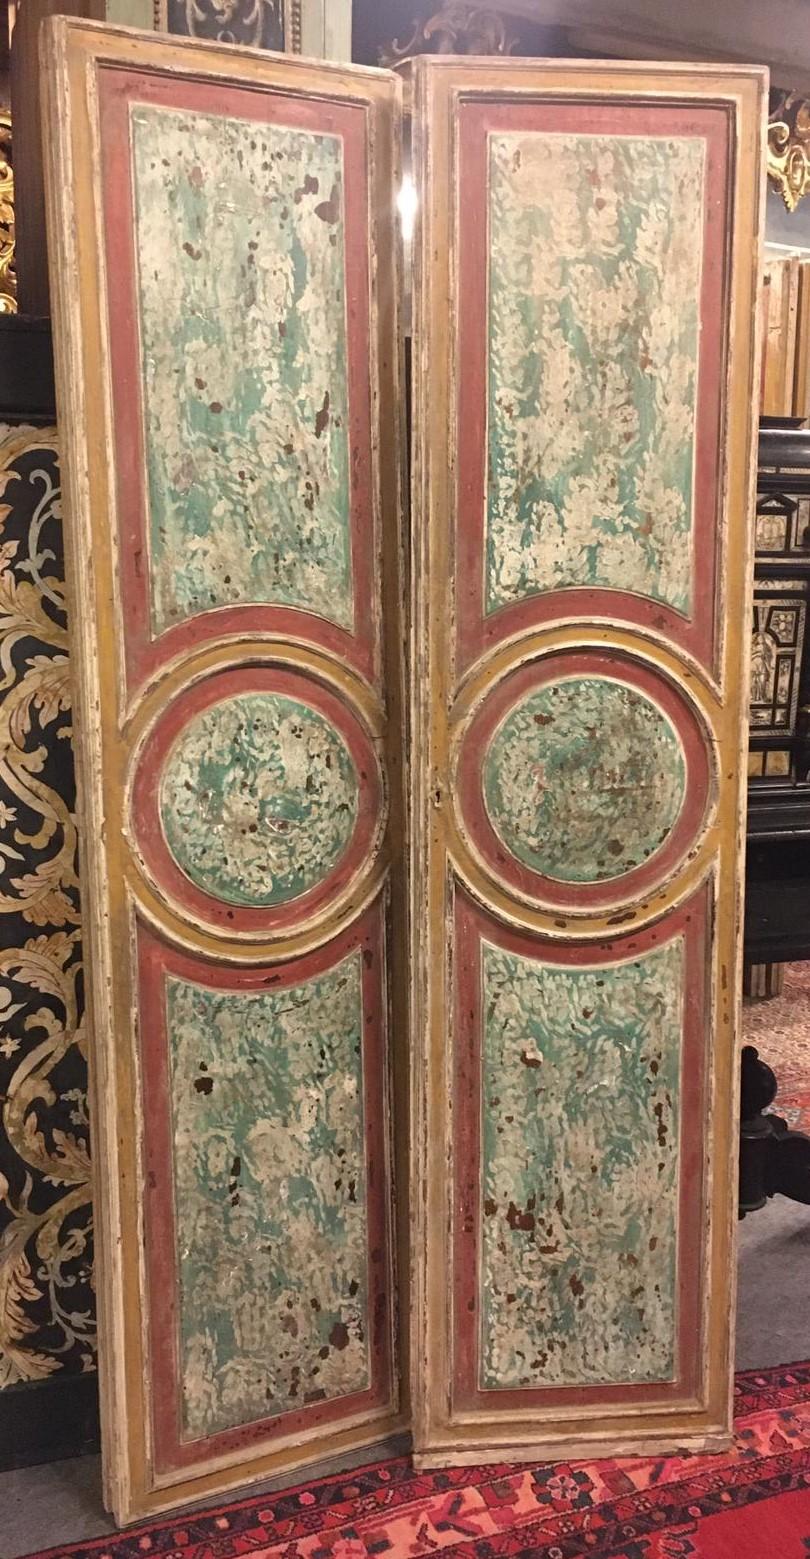 Ensemble de N. 2 portes à double battant laquées avec un effet de faux marbre, colorées et sculptées, double face, sculptées et laquées également au dos, fabriquées à la main au 18ème siècle, de Rome, mesurant cm L 100 x H 210.
Ils sont également